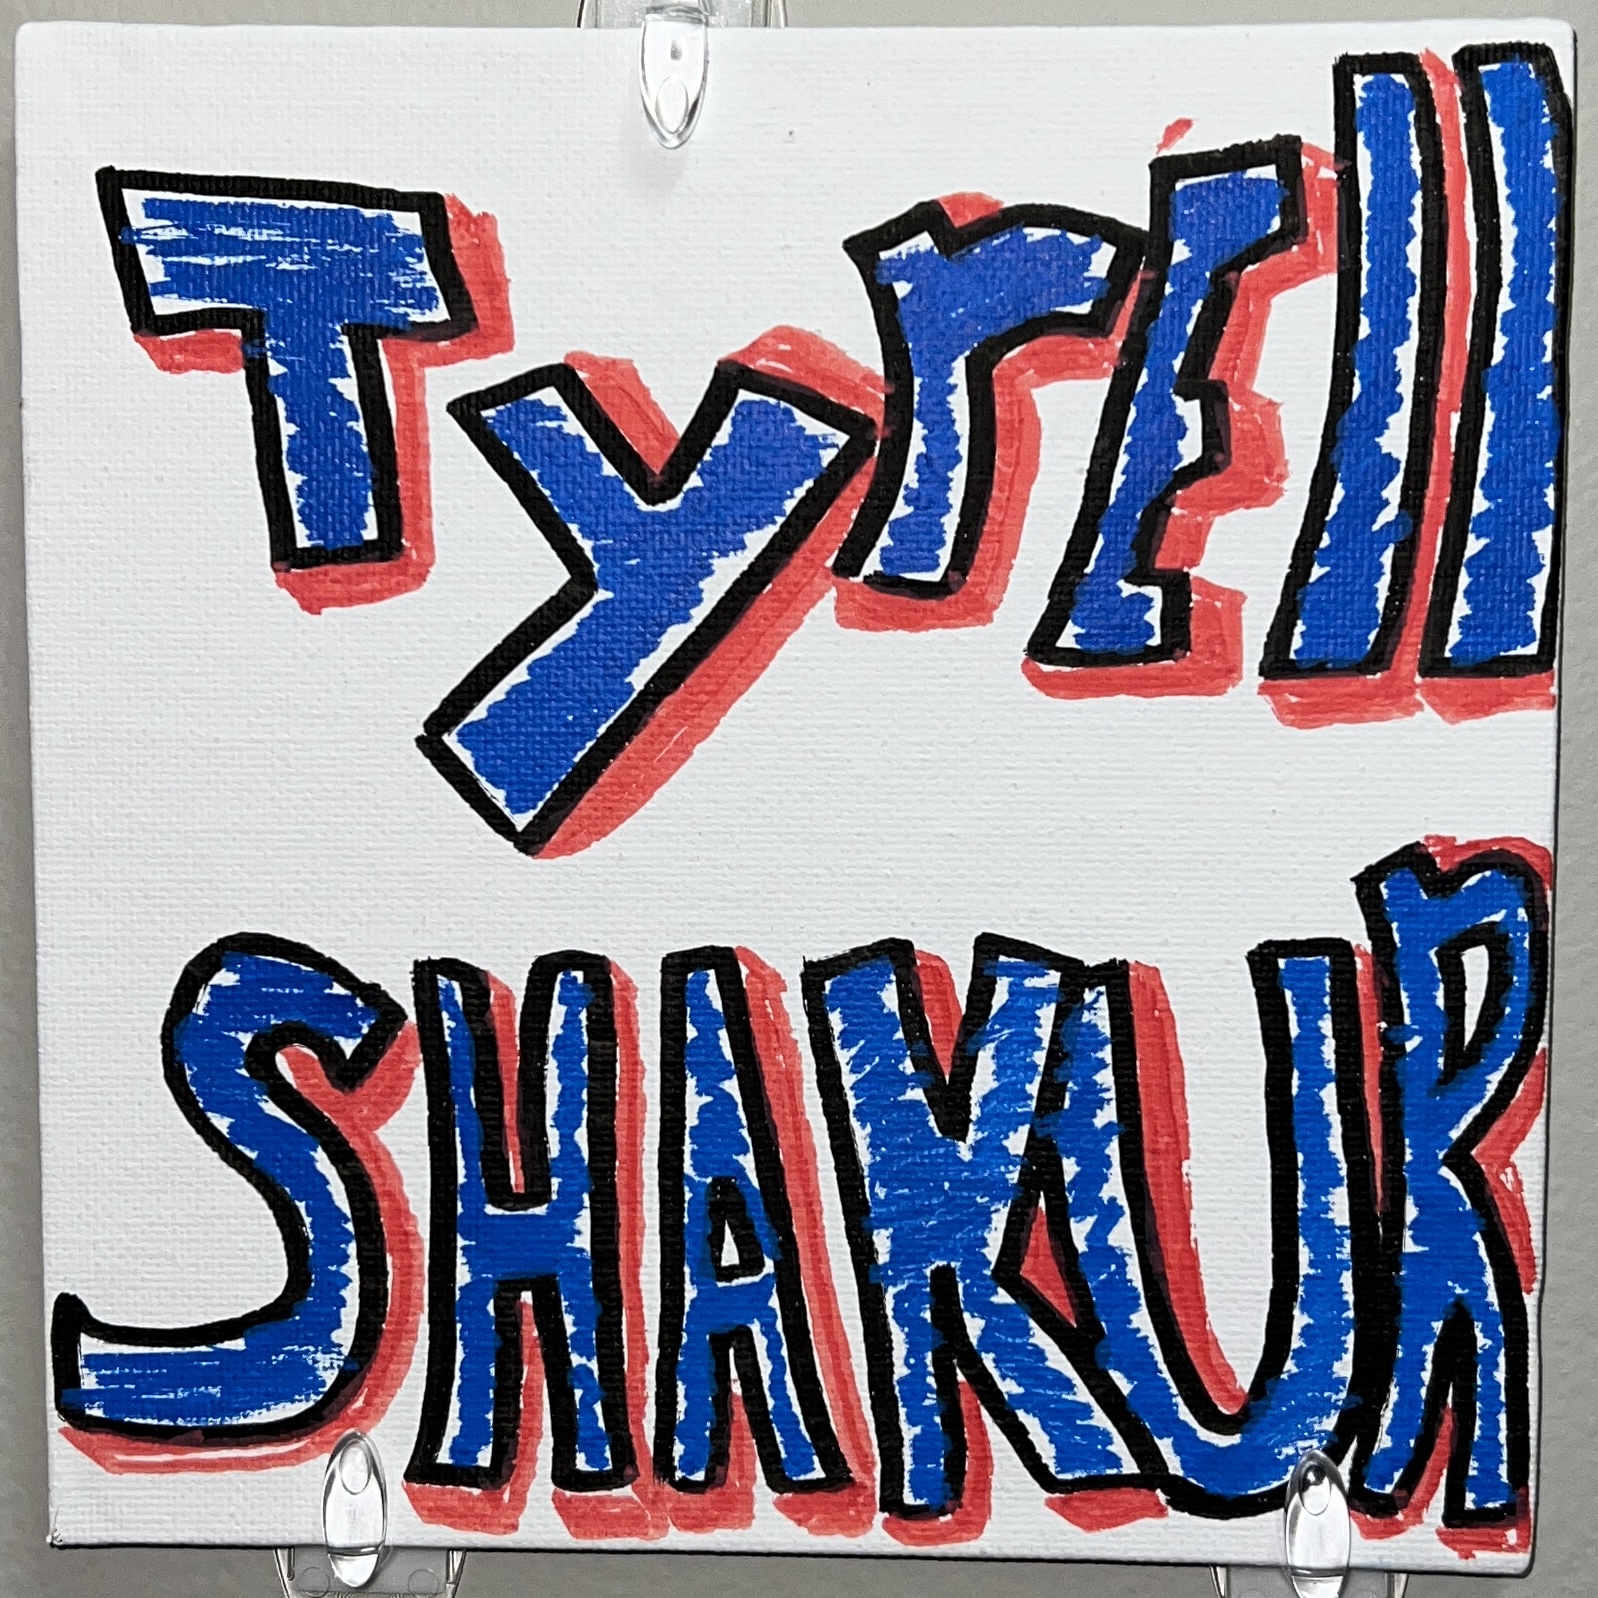 Tyrell Shakur